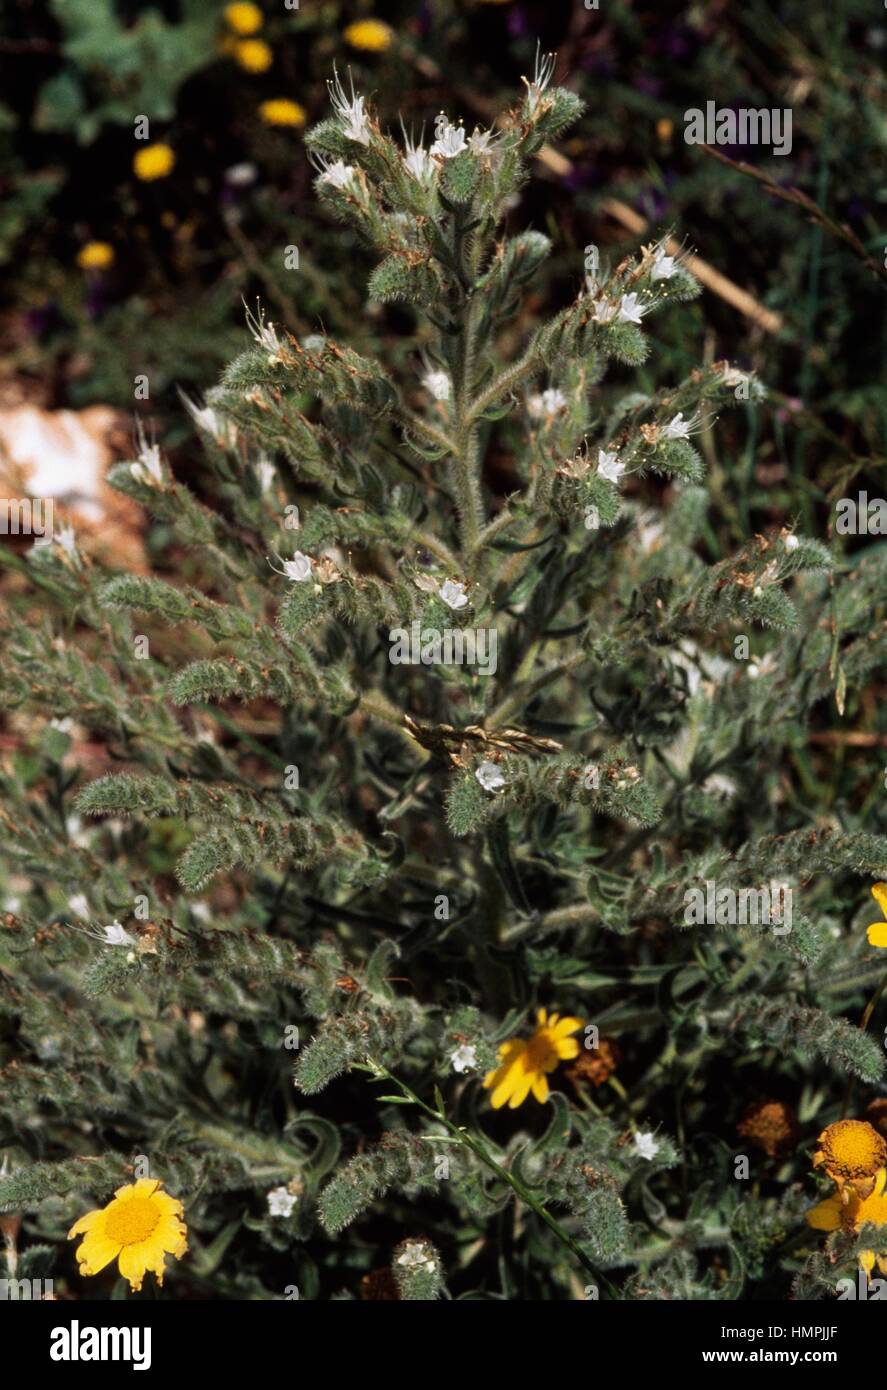 Pale viper's bugloss (Echium italicum), Boraginaceae. Stock Photo